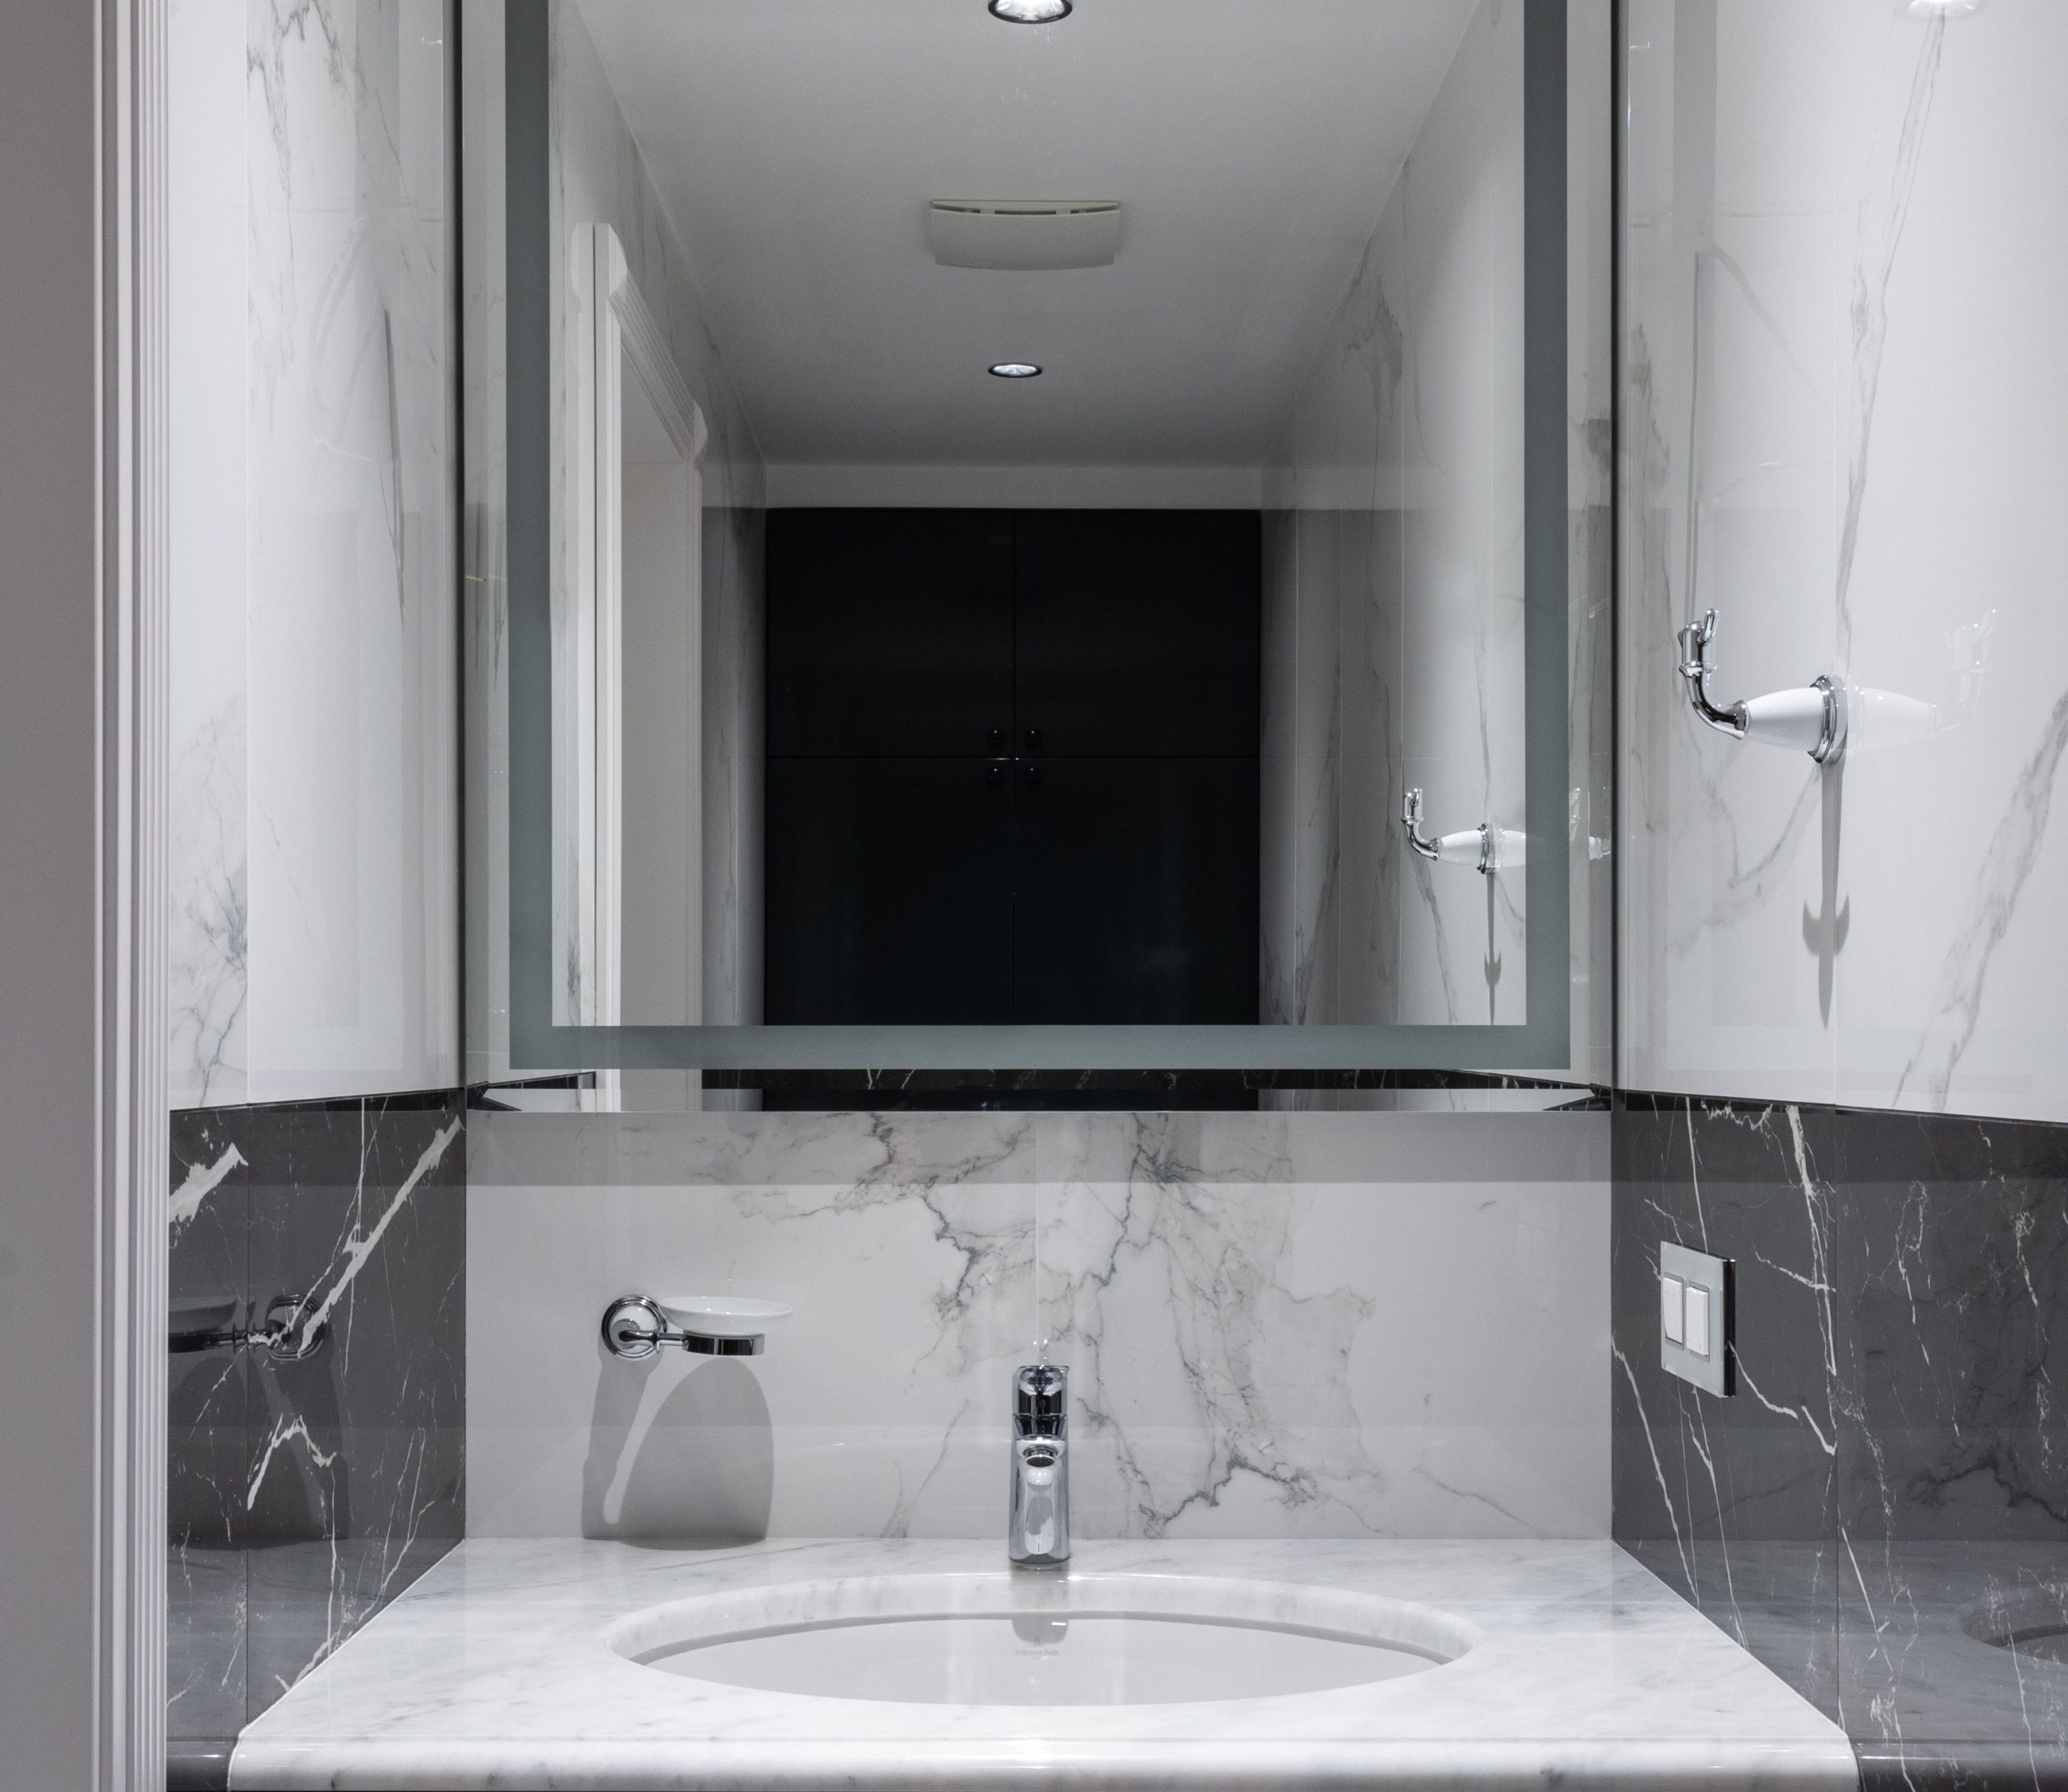 Um banheiro com revestimento de mármore em tons neutros tem seu charme.